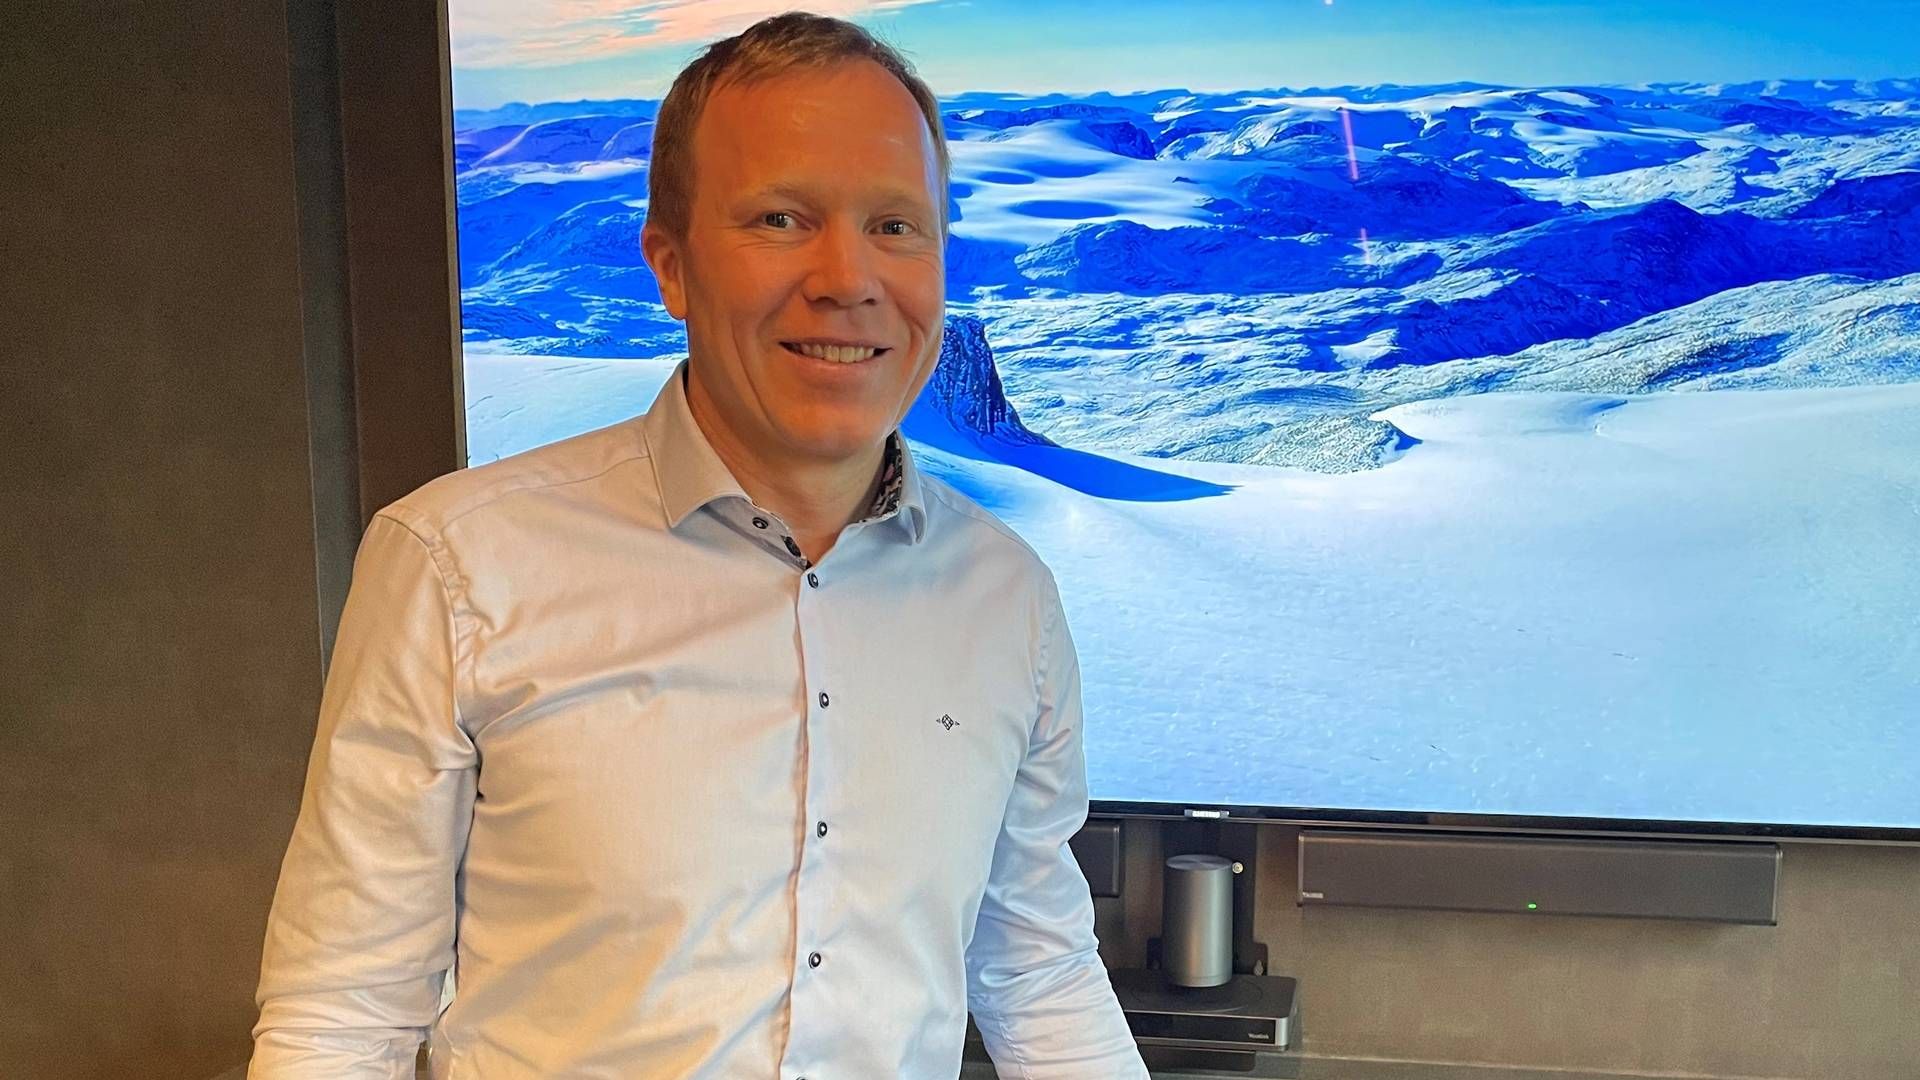 UTLANDET: Sport Outlet-sjef Tor Andre Skeie forteller at det finnes planer for ekspansjon til utlandet. | Foto: Fredrik Andersson/HandelsWatch